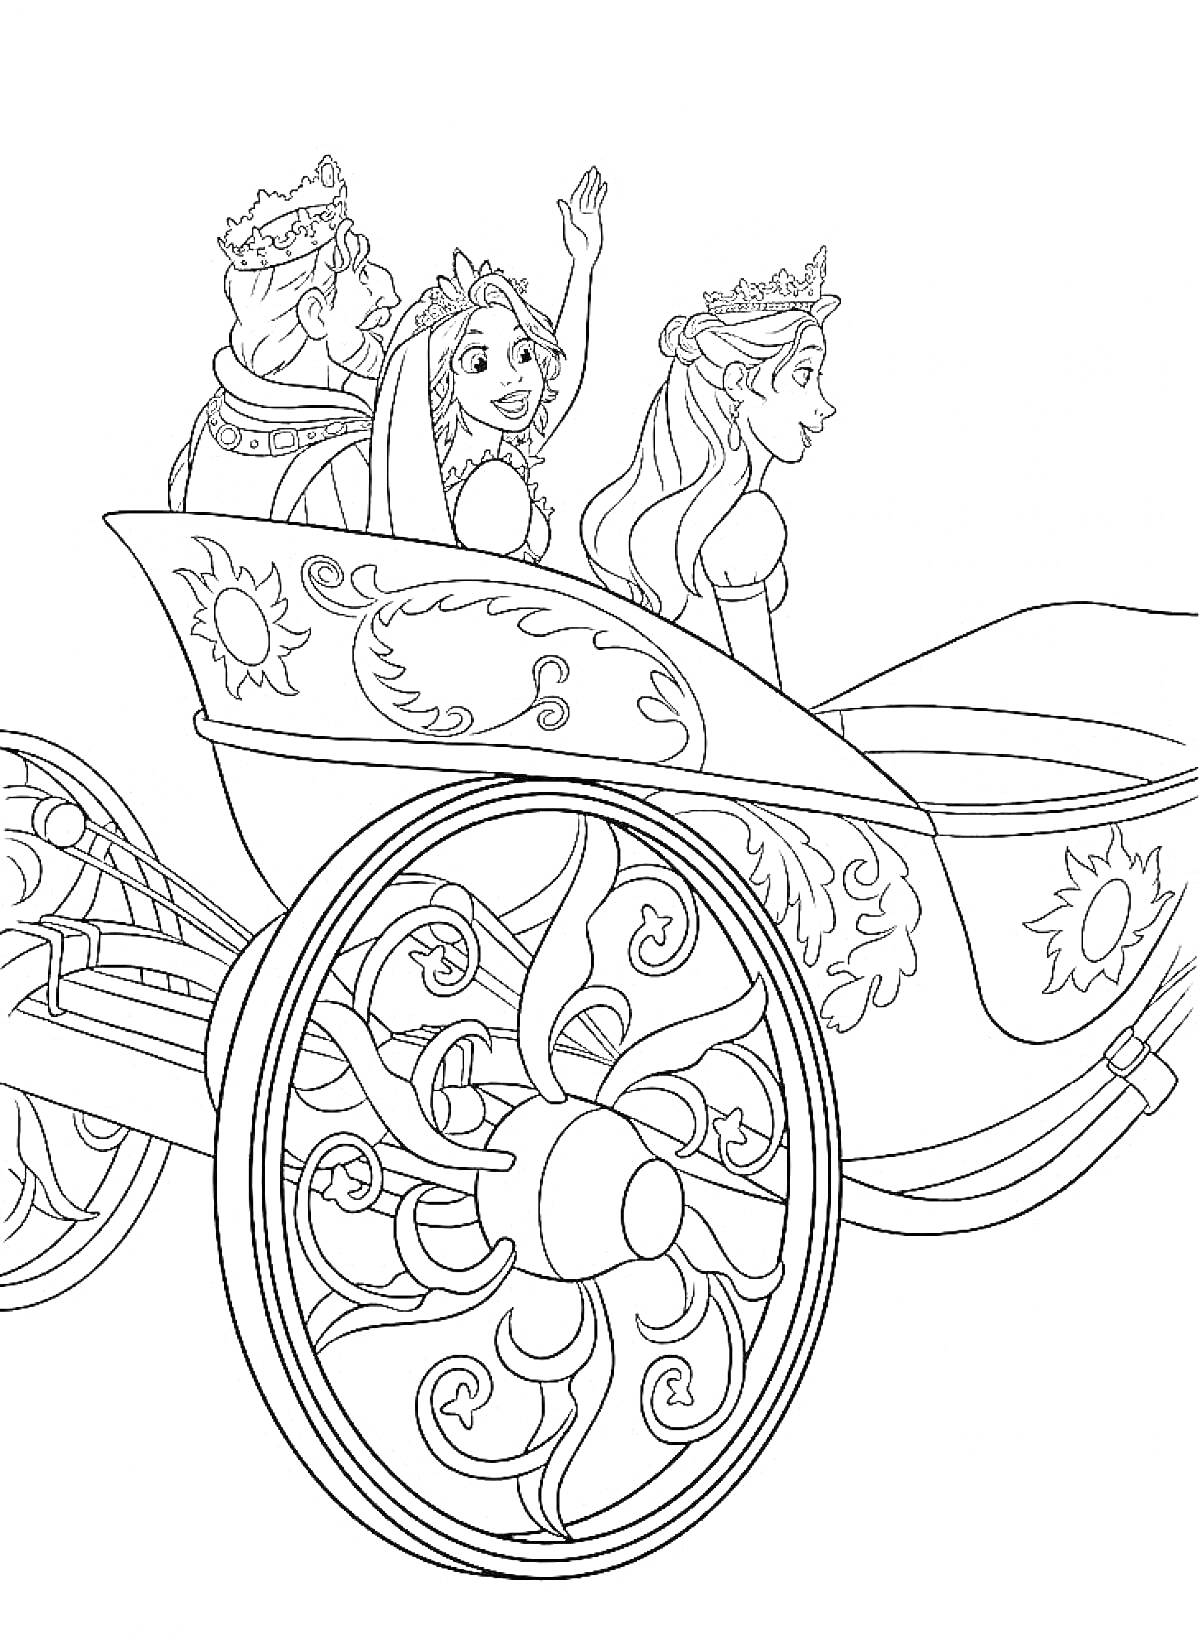 Королевская карета с тремя персонажами